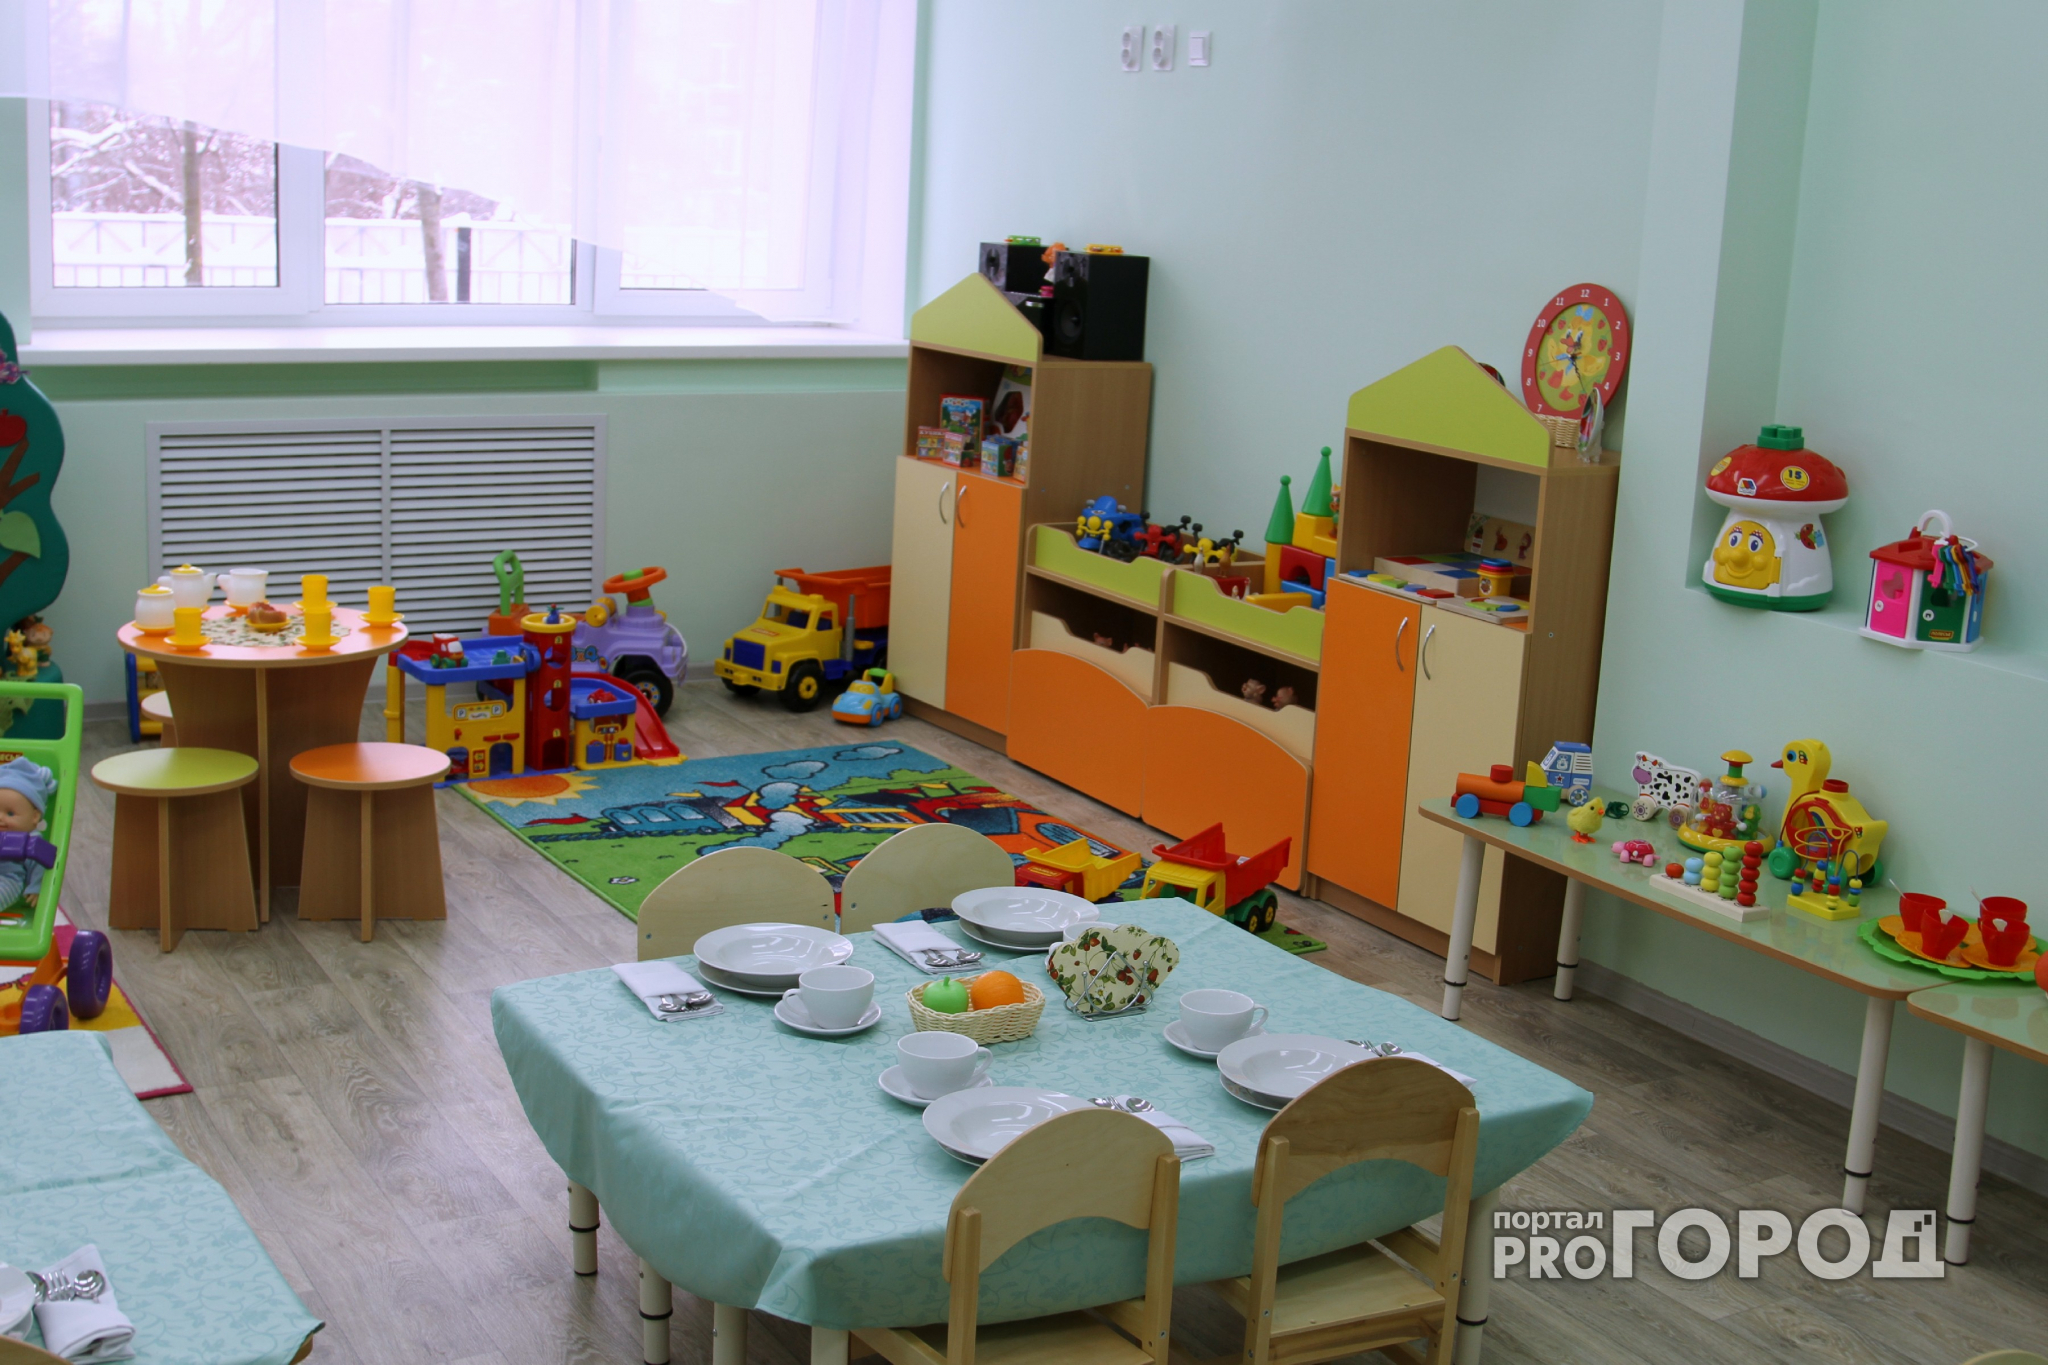 Нижегородский детский сад превратился в жилище для 13 мигрантов